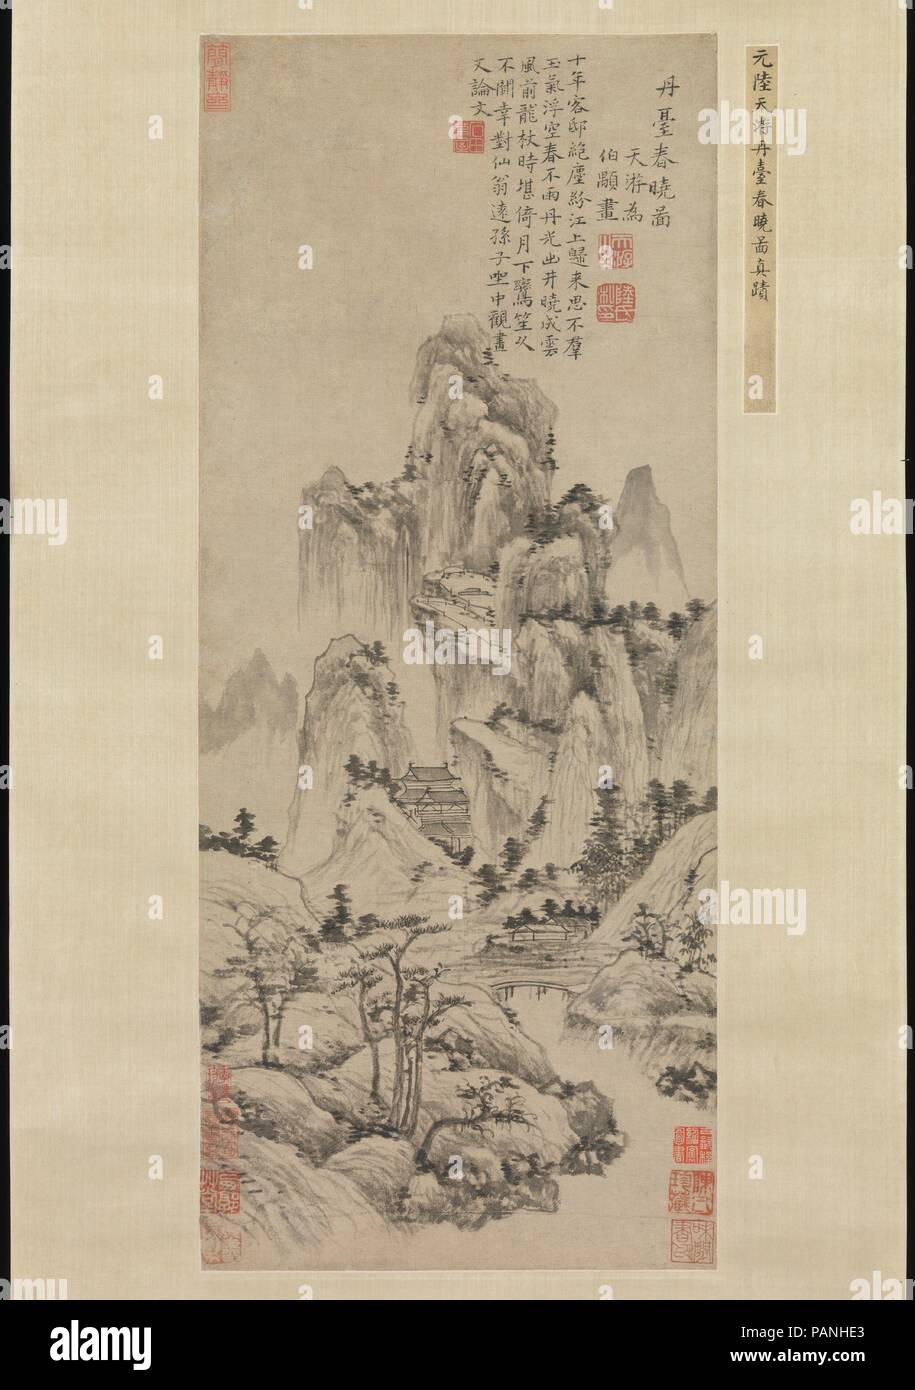 La molla alba sopra l'Elisir terrazza. Artista: Lu Guang (Cinese, ca. 1300-dopo il 1371). Cultura: la Cina. Dimensioni: Immagine: 24 1/4 x 10 1/4 in. (61,6 x 26 cm) in generale con montaggio: 87 1/2 x 17 5/8 in. (222.3 x 44,8 cm) in generale con le manopole: 87 1/2 x 20 5/8 in. (222.3 x 52,4 cm). Data: ca. 1369. Per sfuggire alla turbolenza dell'anno di chiusura della dinastia Yuan, Lu Guang percorsa lontano dalla sua città nativa di Suzhou. Dipinse la molla Alba dopo il suo ritorno al Lago Tai area, a seguito della creazione della Dinastia Ming nel 1368. Il riferimento all'Elixir terrazza nel titolo della pittura Foto Stock